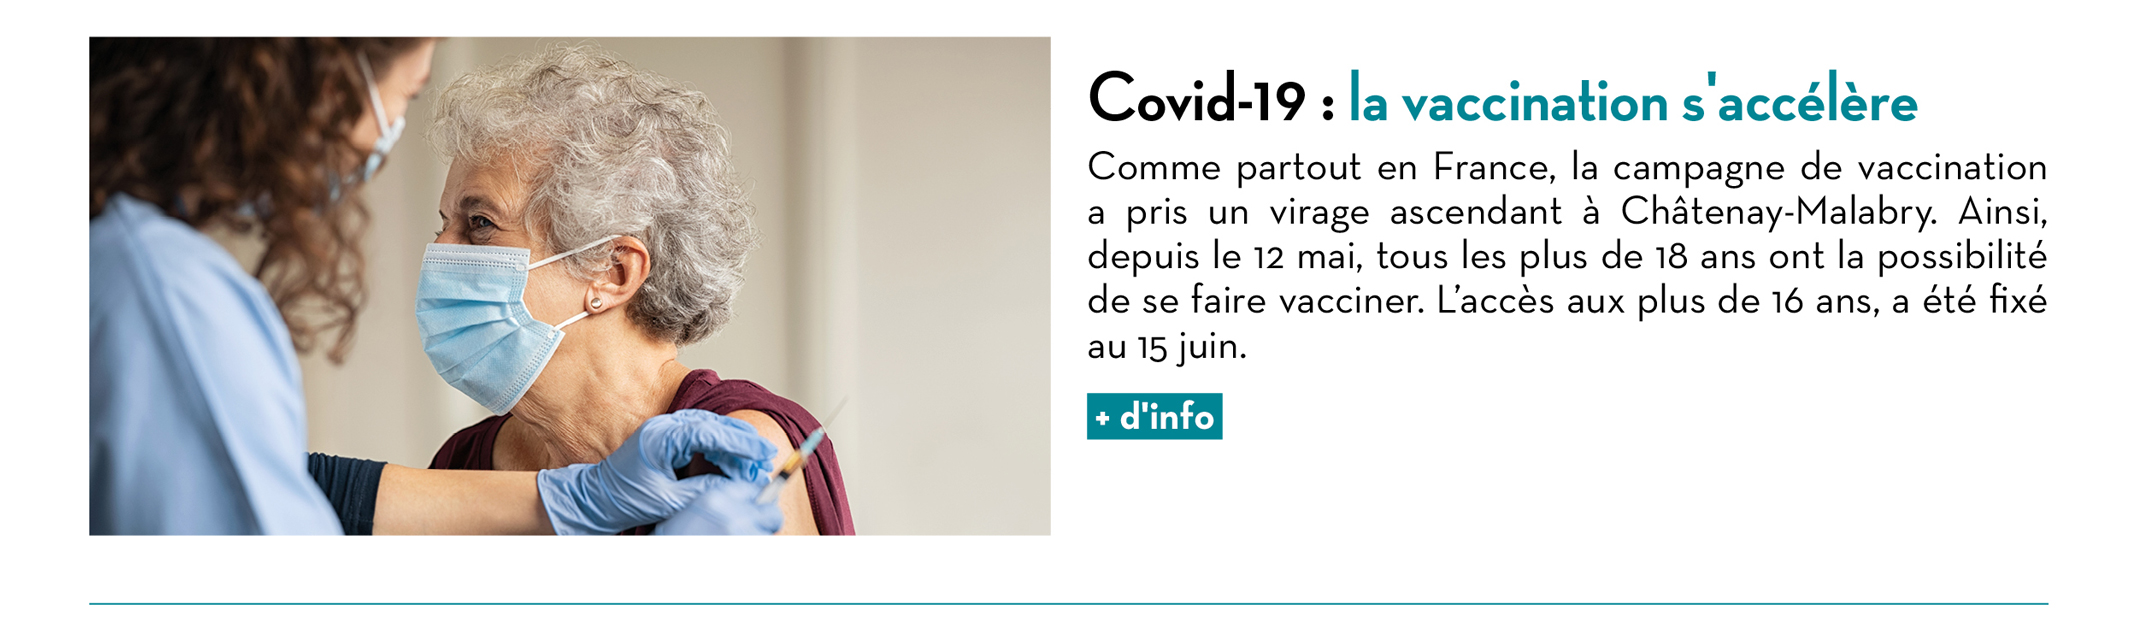 Covid-19 : la vaccination s'accélère